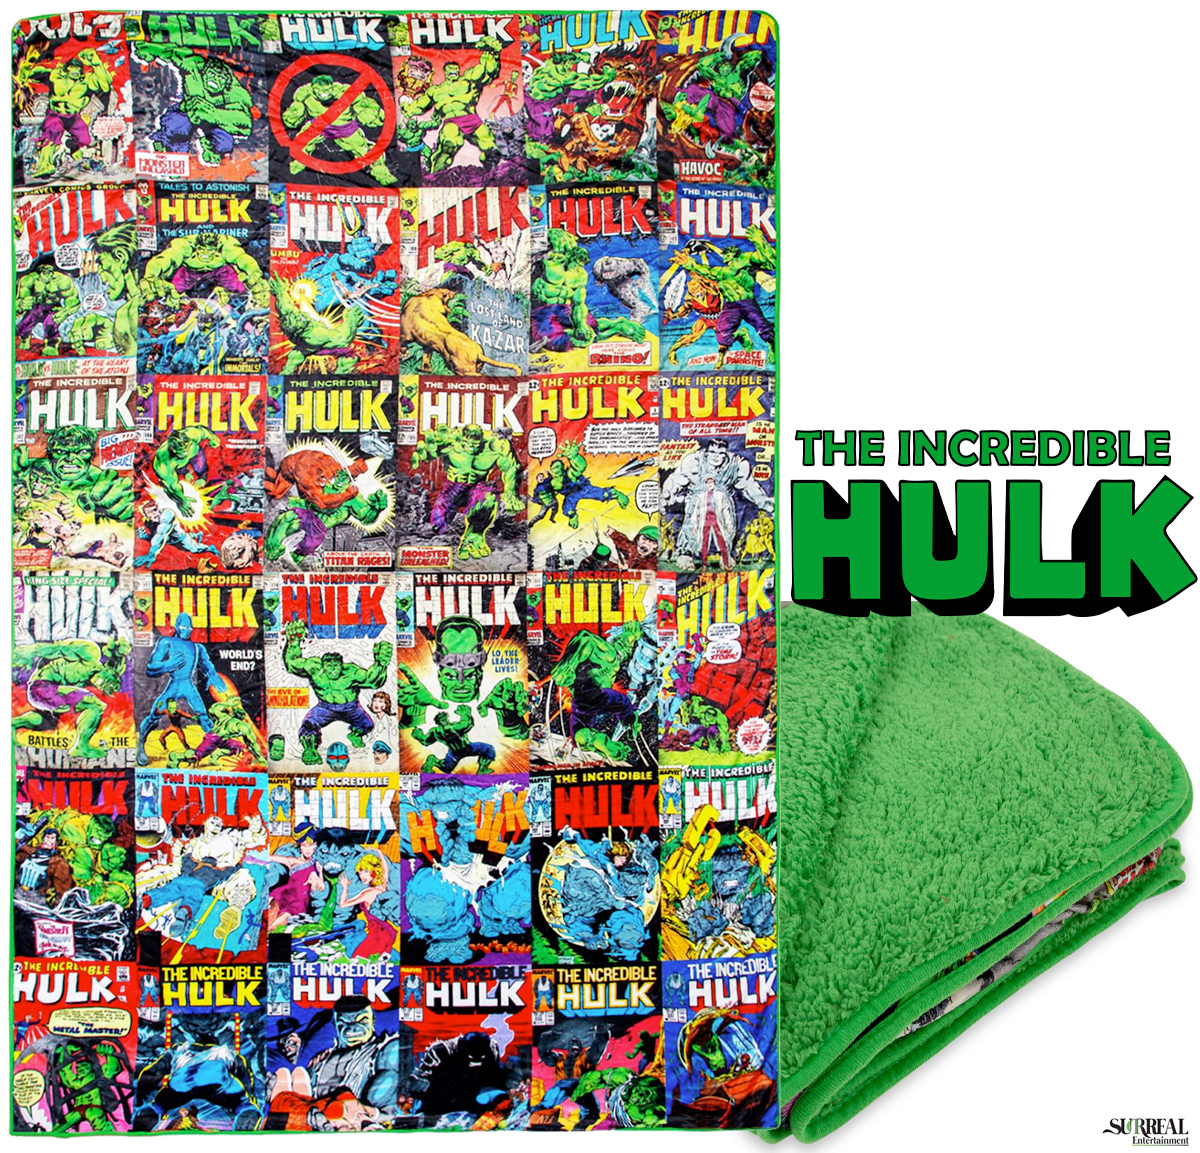 Cobertor O Incrível Hulk com Capas das Revistas em Quadrinhos